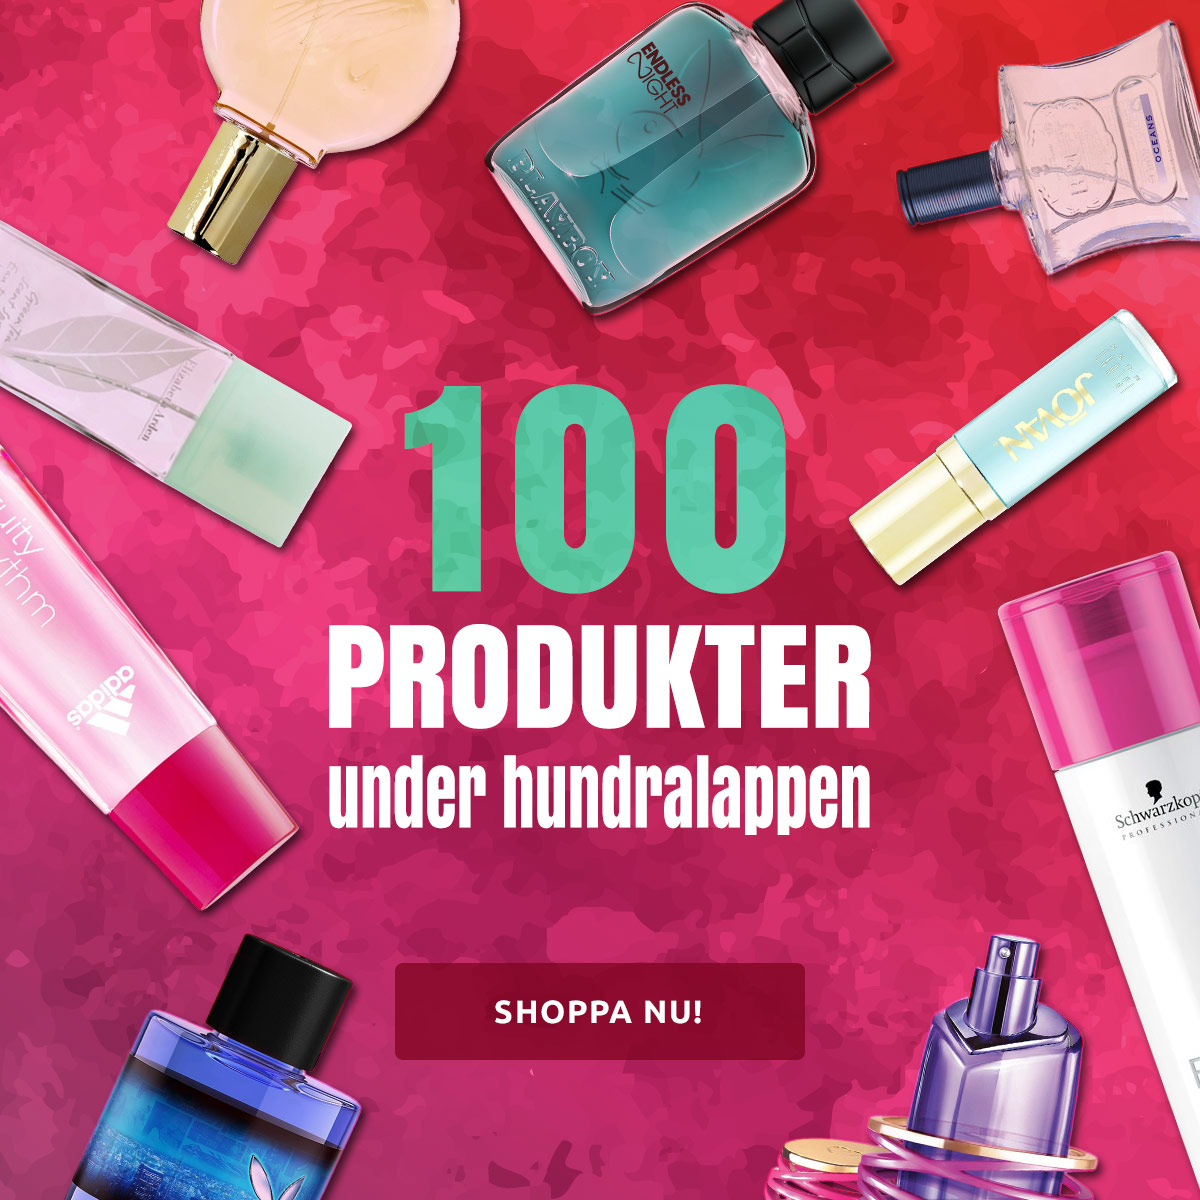 100 produkter under hundralappen